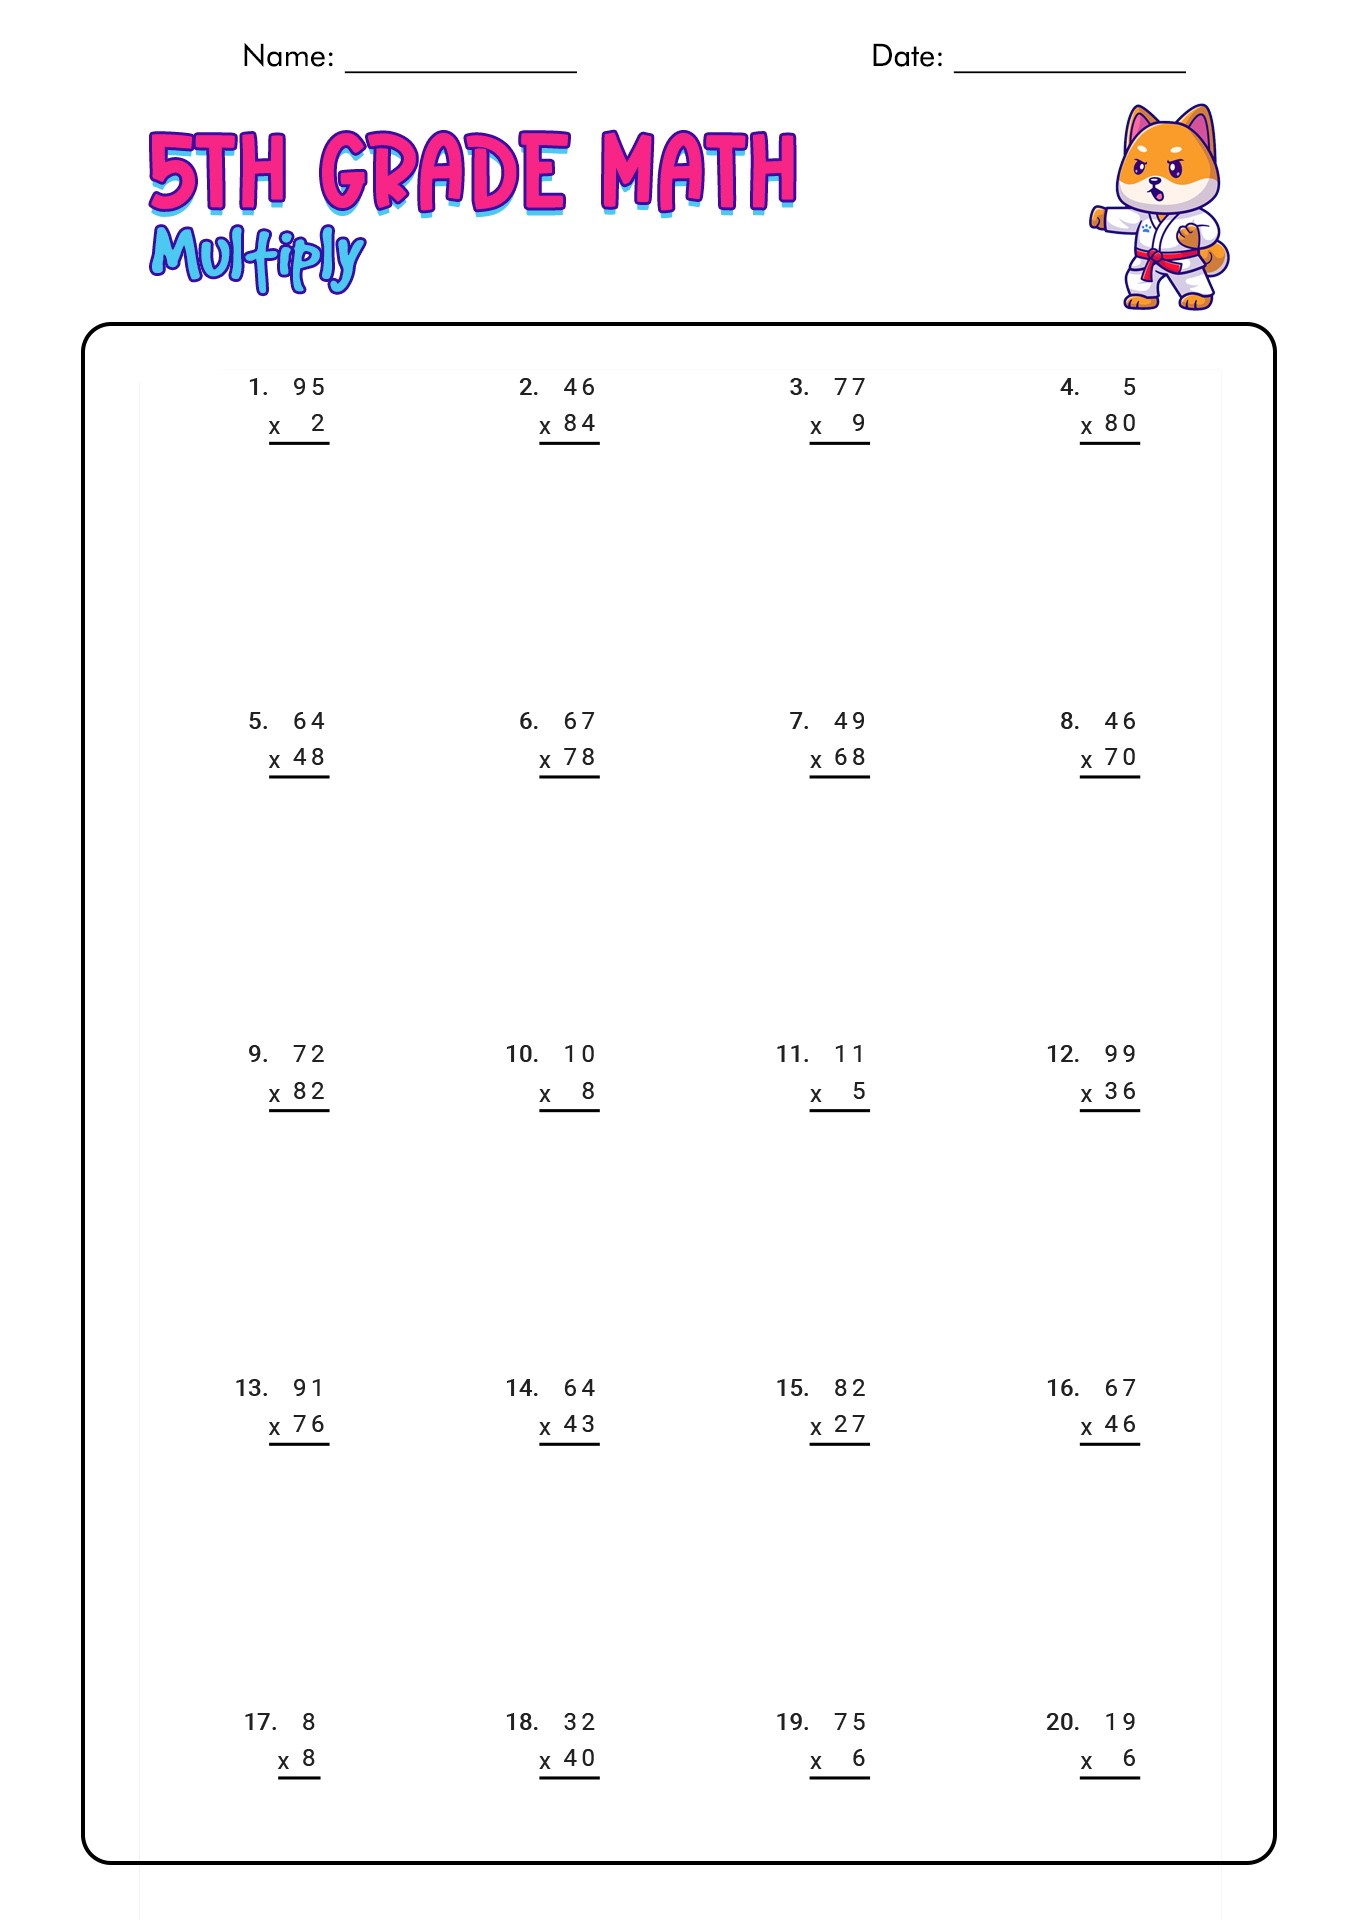 5th Grade Math Worksheets Image